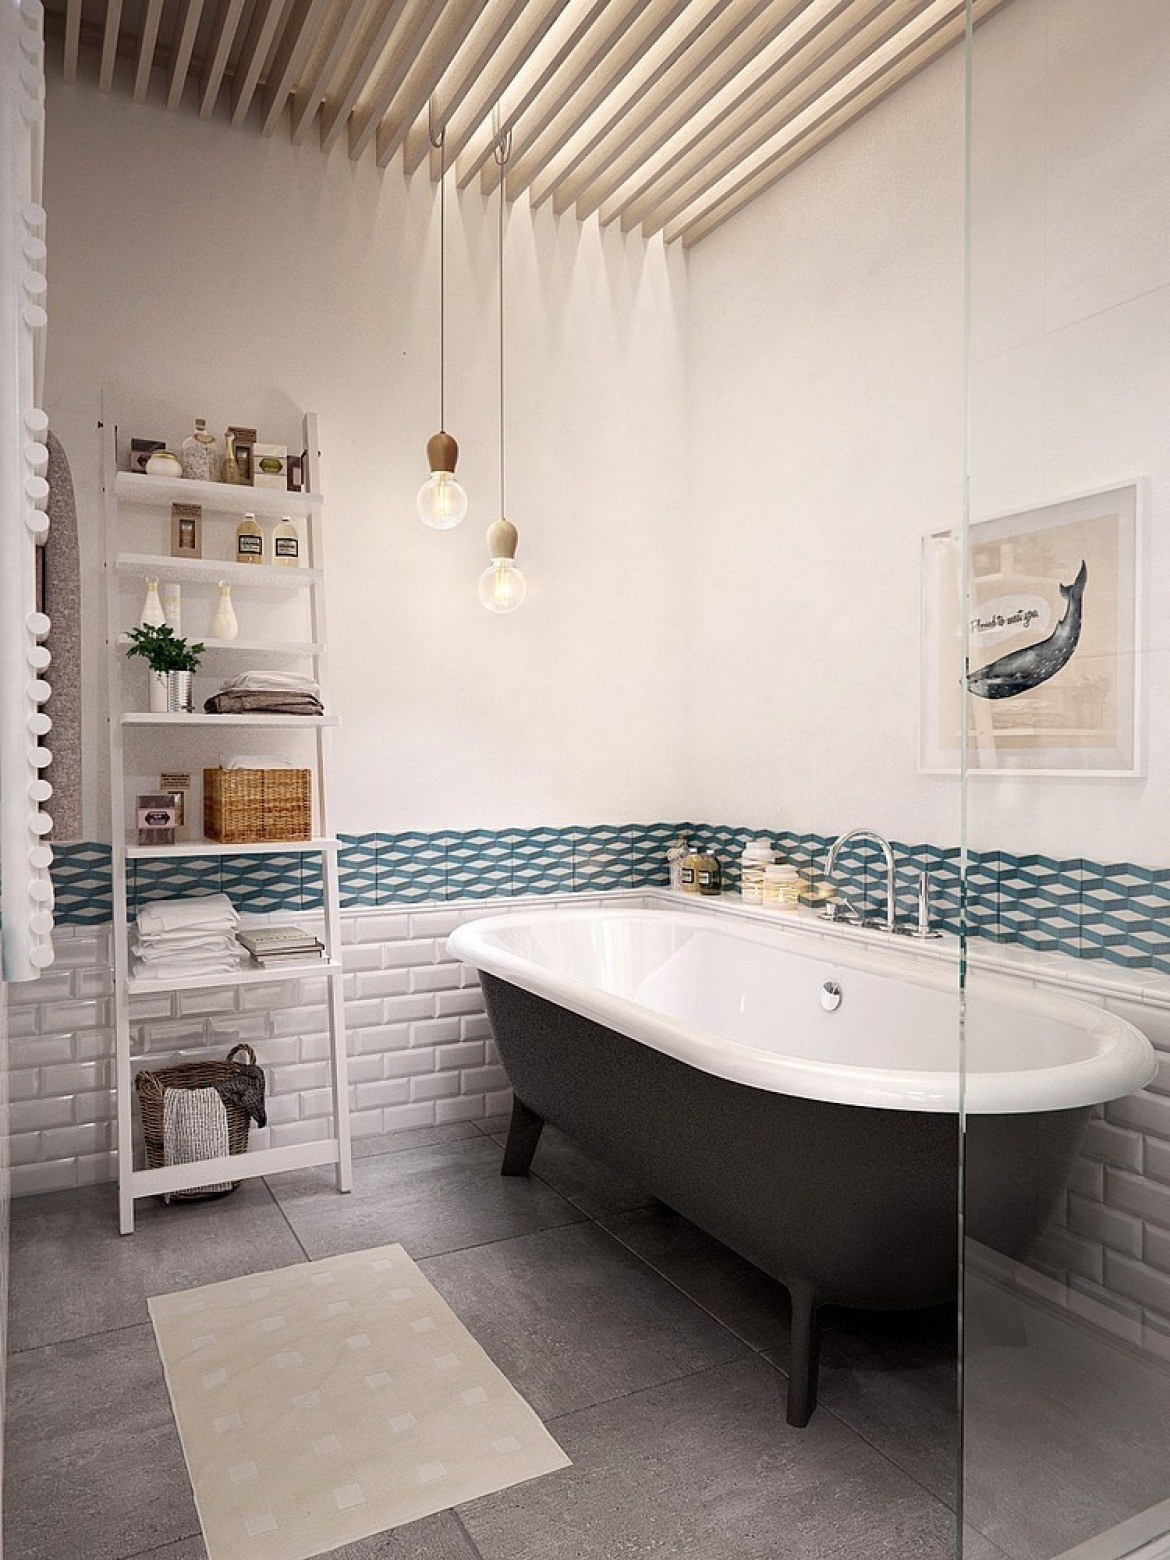 Biała drabinka z pólkami,żarówki na kablu,płytka biała cegielka,szara betonowa posadzka i turkusowy dekor na scianie w łazience (24815)